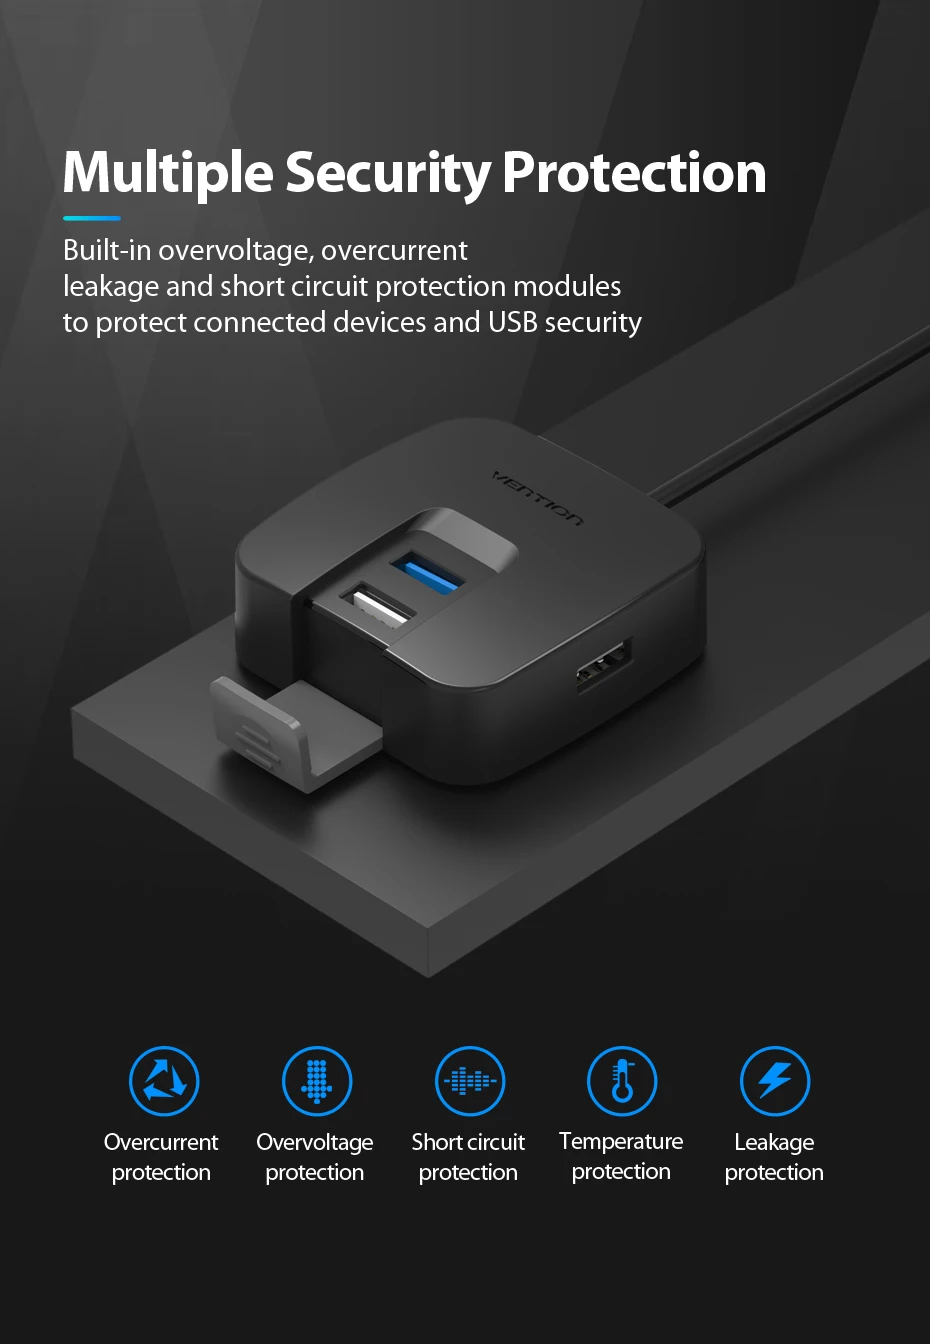 Vention 4 порта USB 3,0 концентратор с микро USB порт питания и держатель телефона USB разветвитель адаптер для карта для ноутбука ридер планшет концентратор USB 2,0